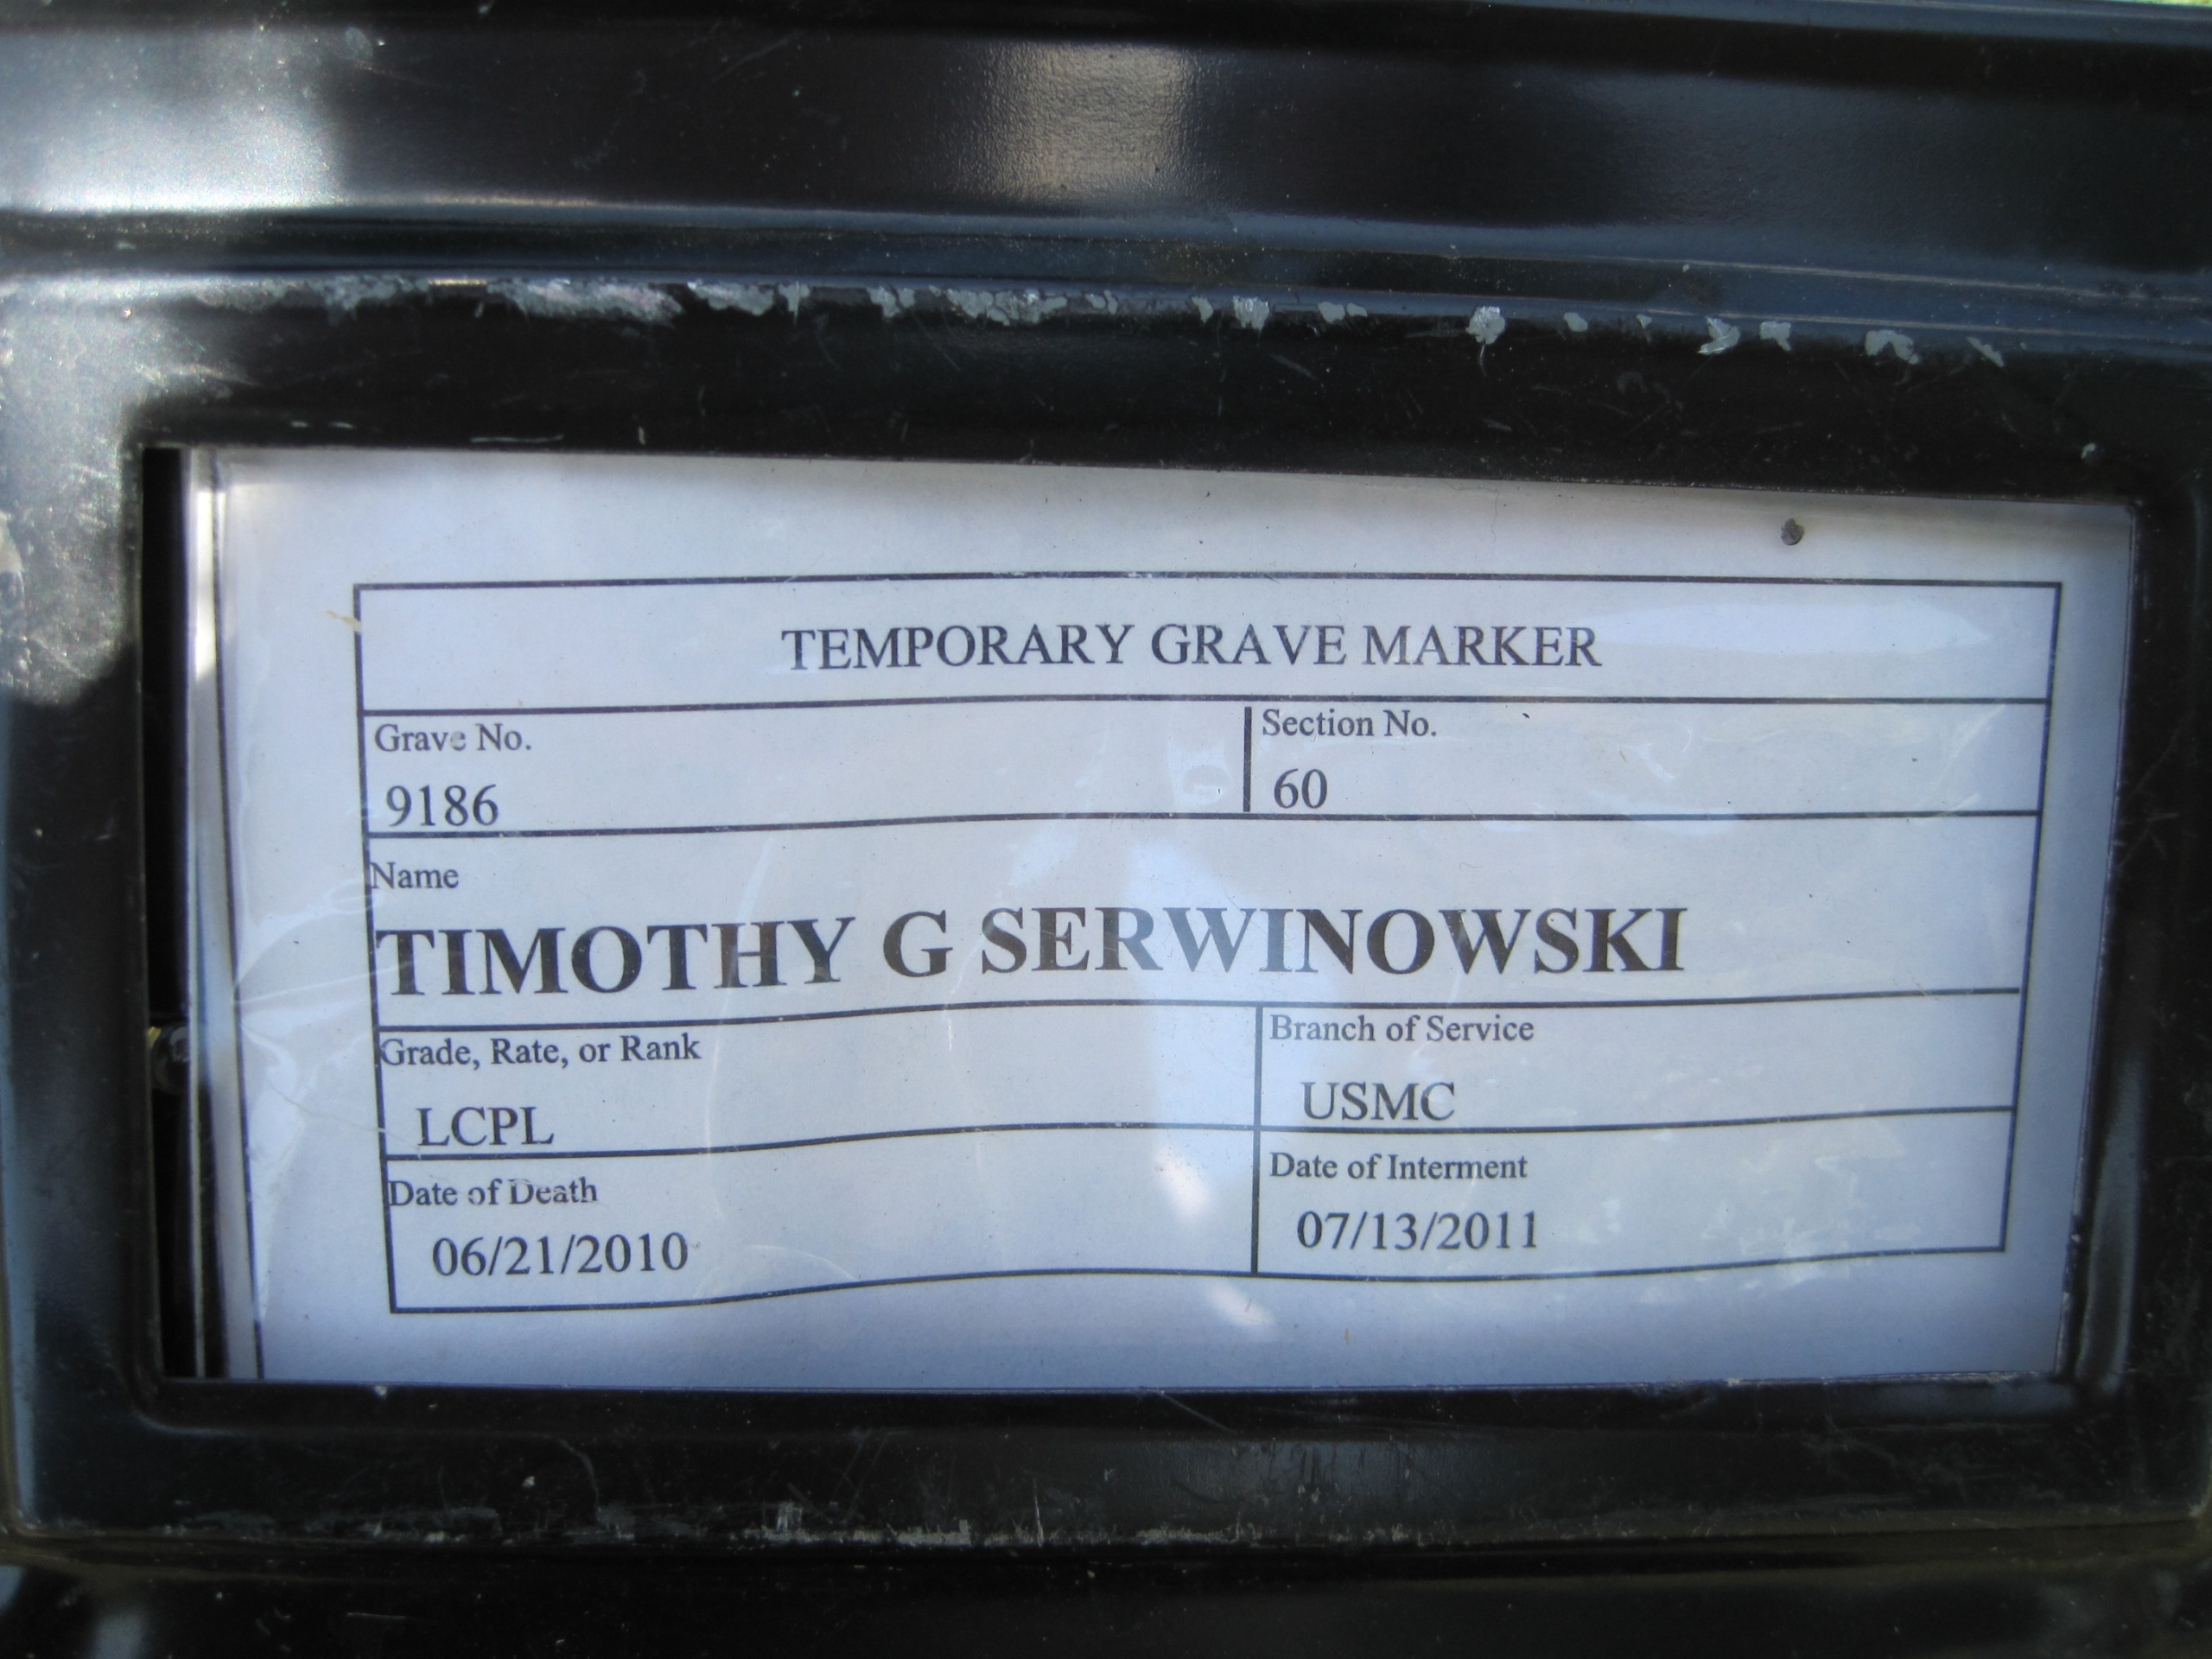 tgserwinowski-gravesite-photo-by-eileen-horan-july-2011-001